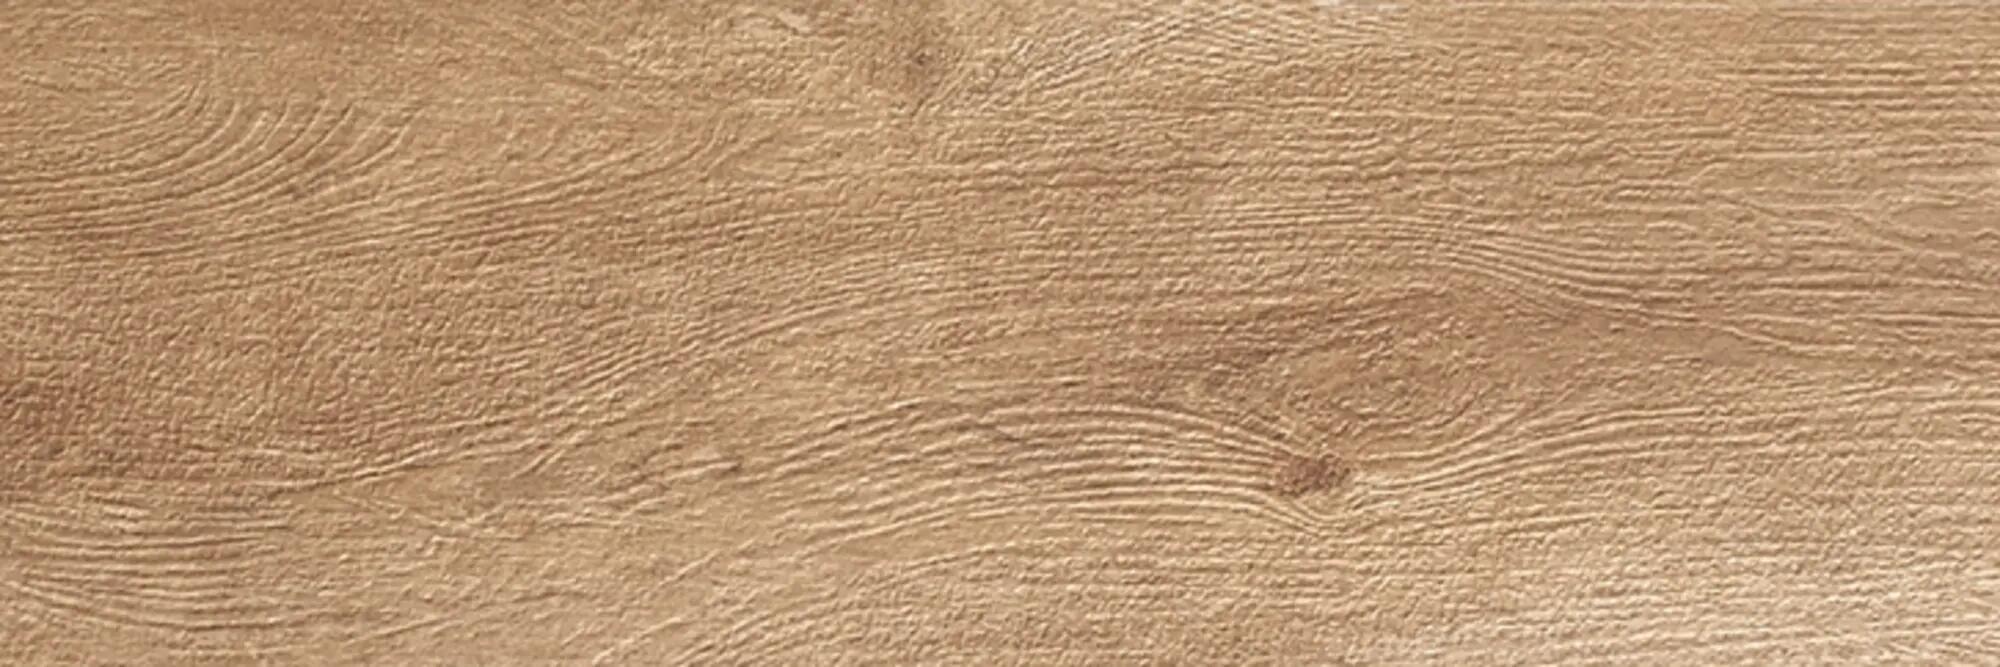 Suelo cerámico merbau efecto madera gris 20.5x61.5 cm c1